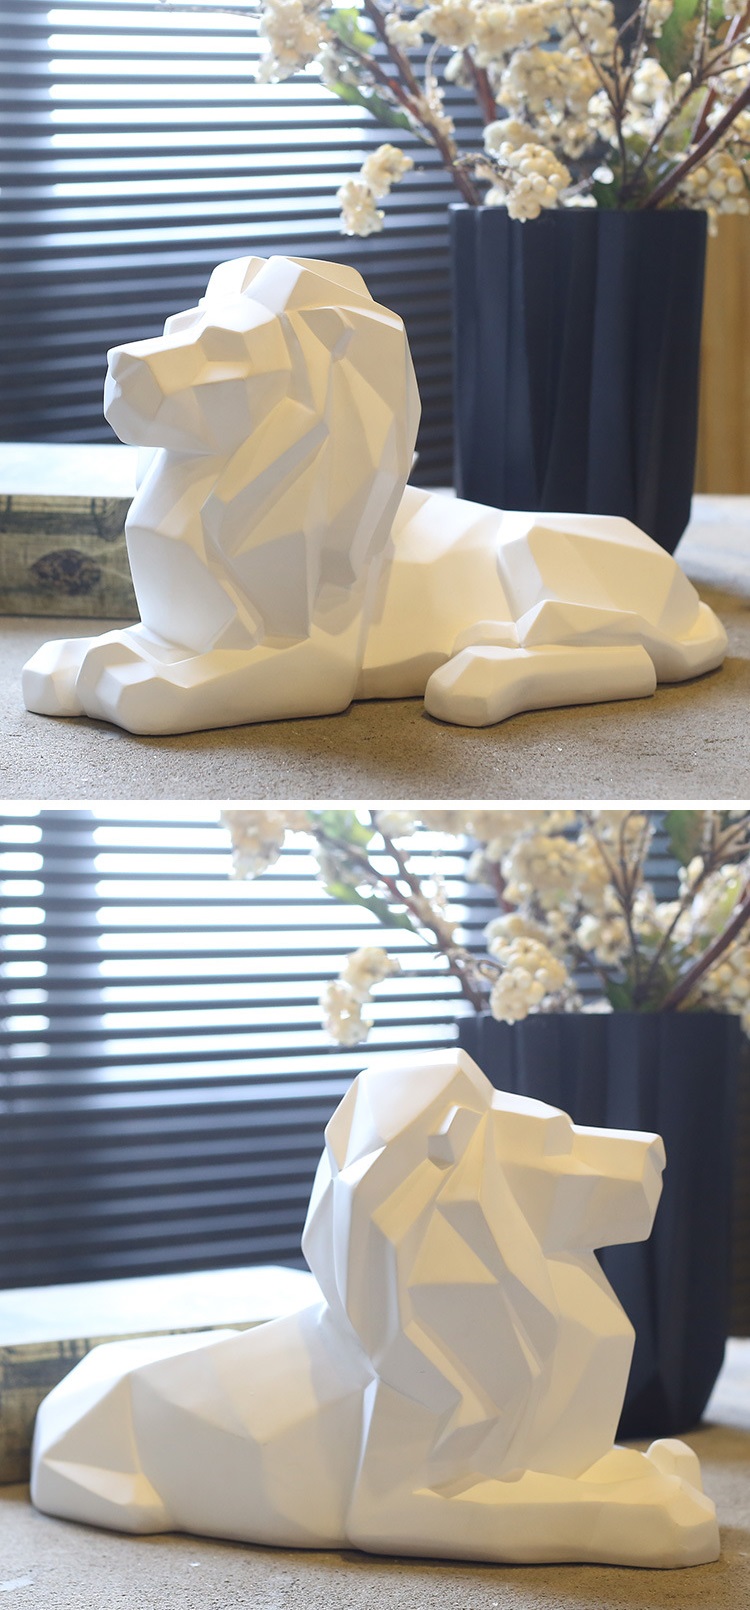 hj3589 幾何疊紙獅子擺件_濱州宏景雕塑有限公司